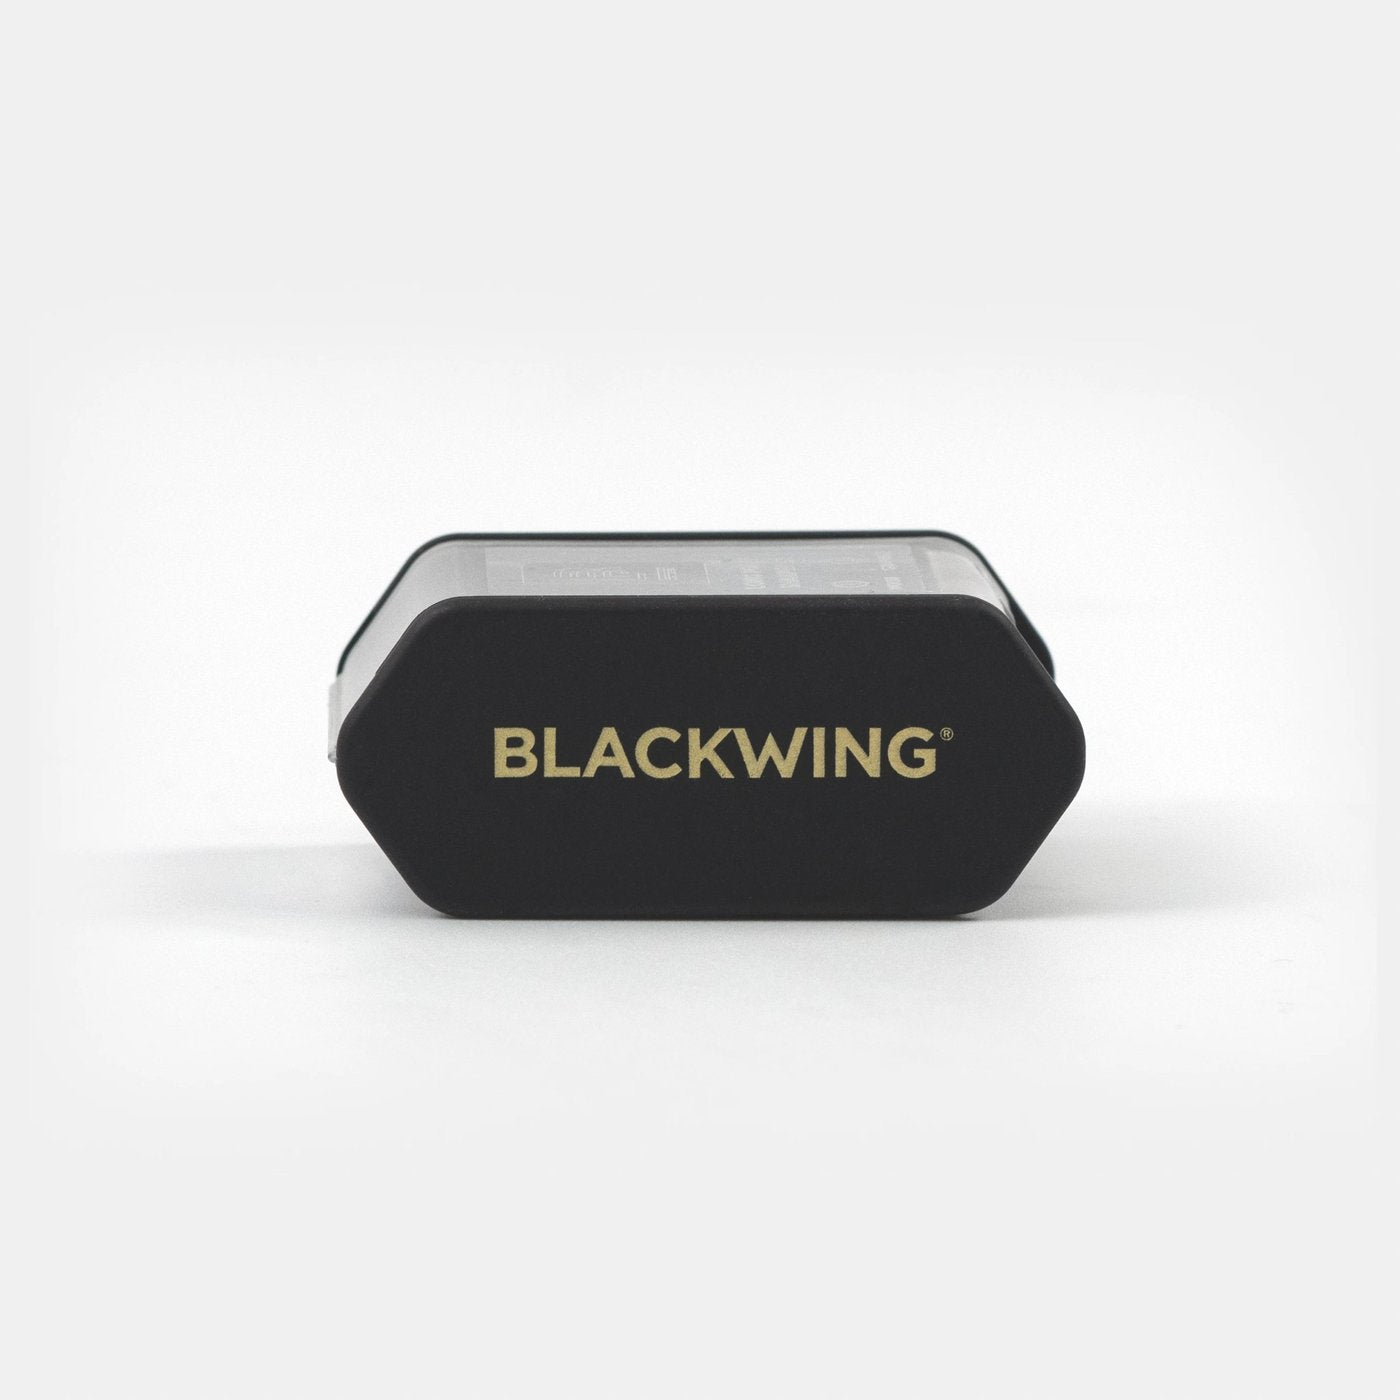 Blackwing-twostep-black-Simple-Beautiful-Things